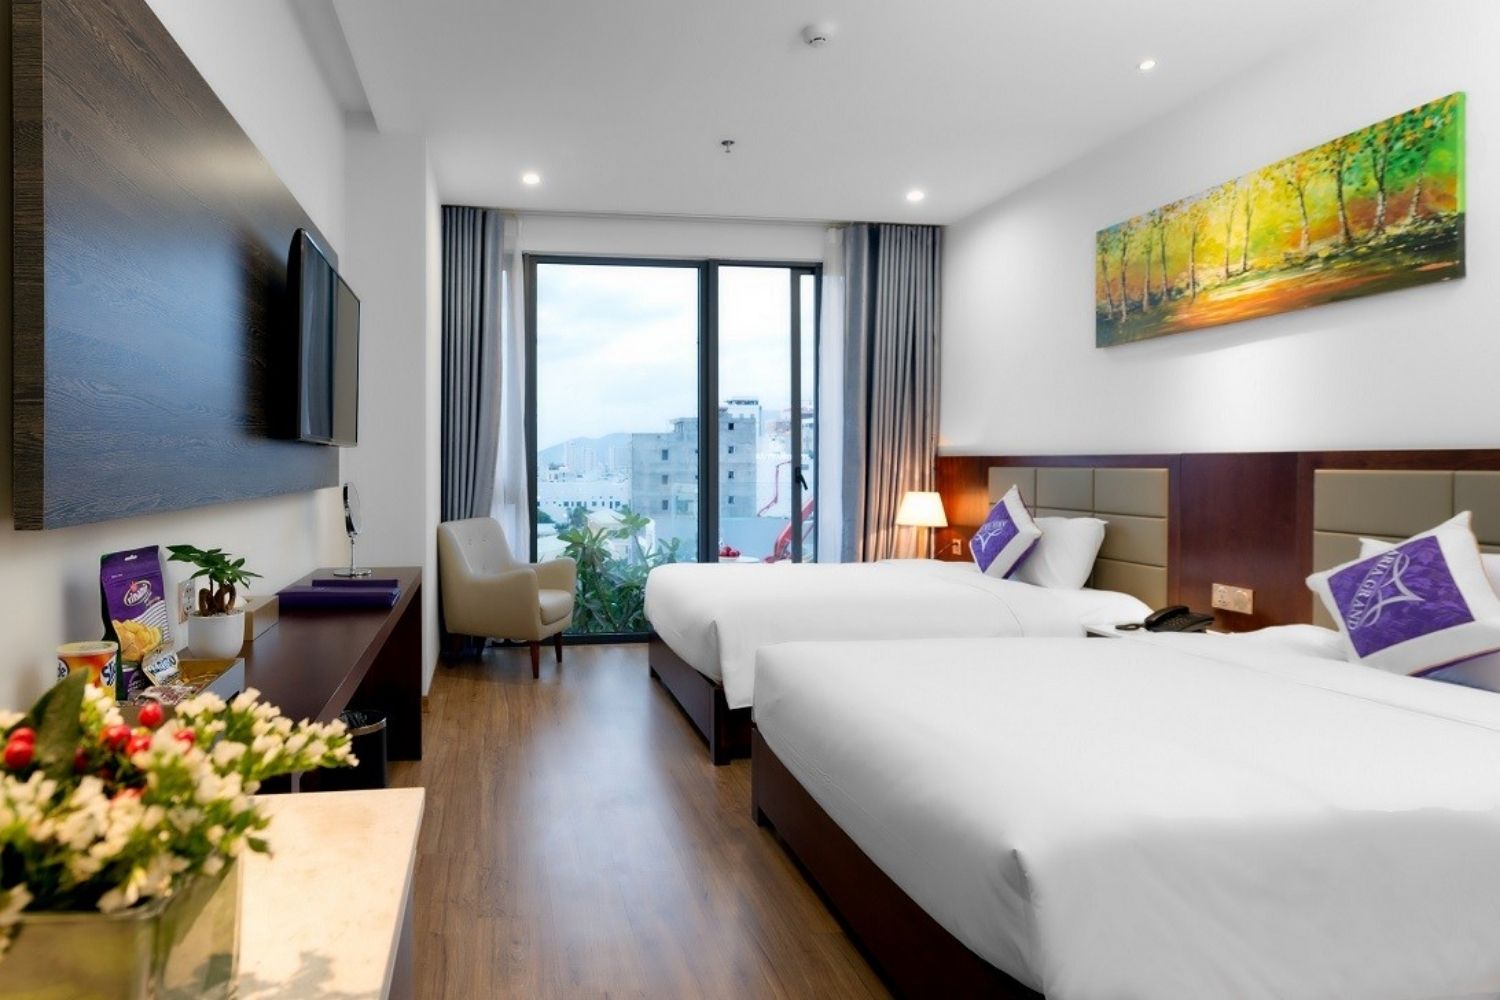 Đến Aria Hotel tận hưởng đẳng cấp khách sạn 4 sao bậc nhất tại Đà Nẵng 6